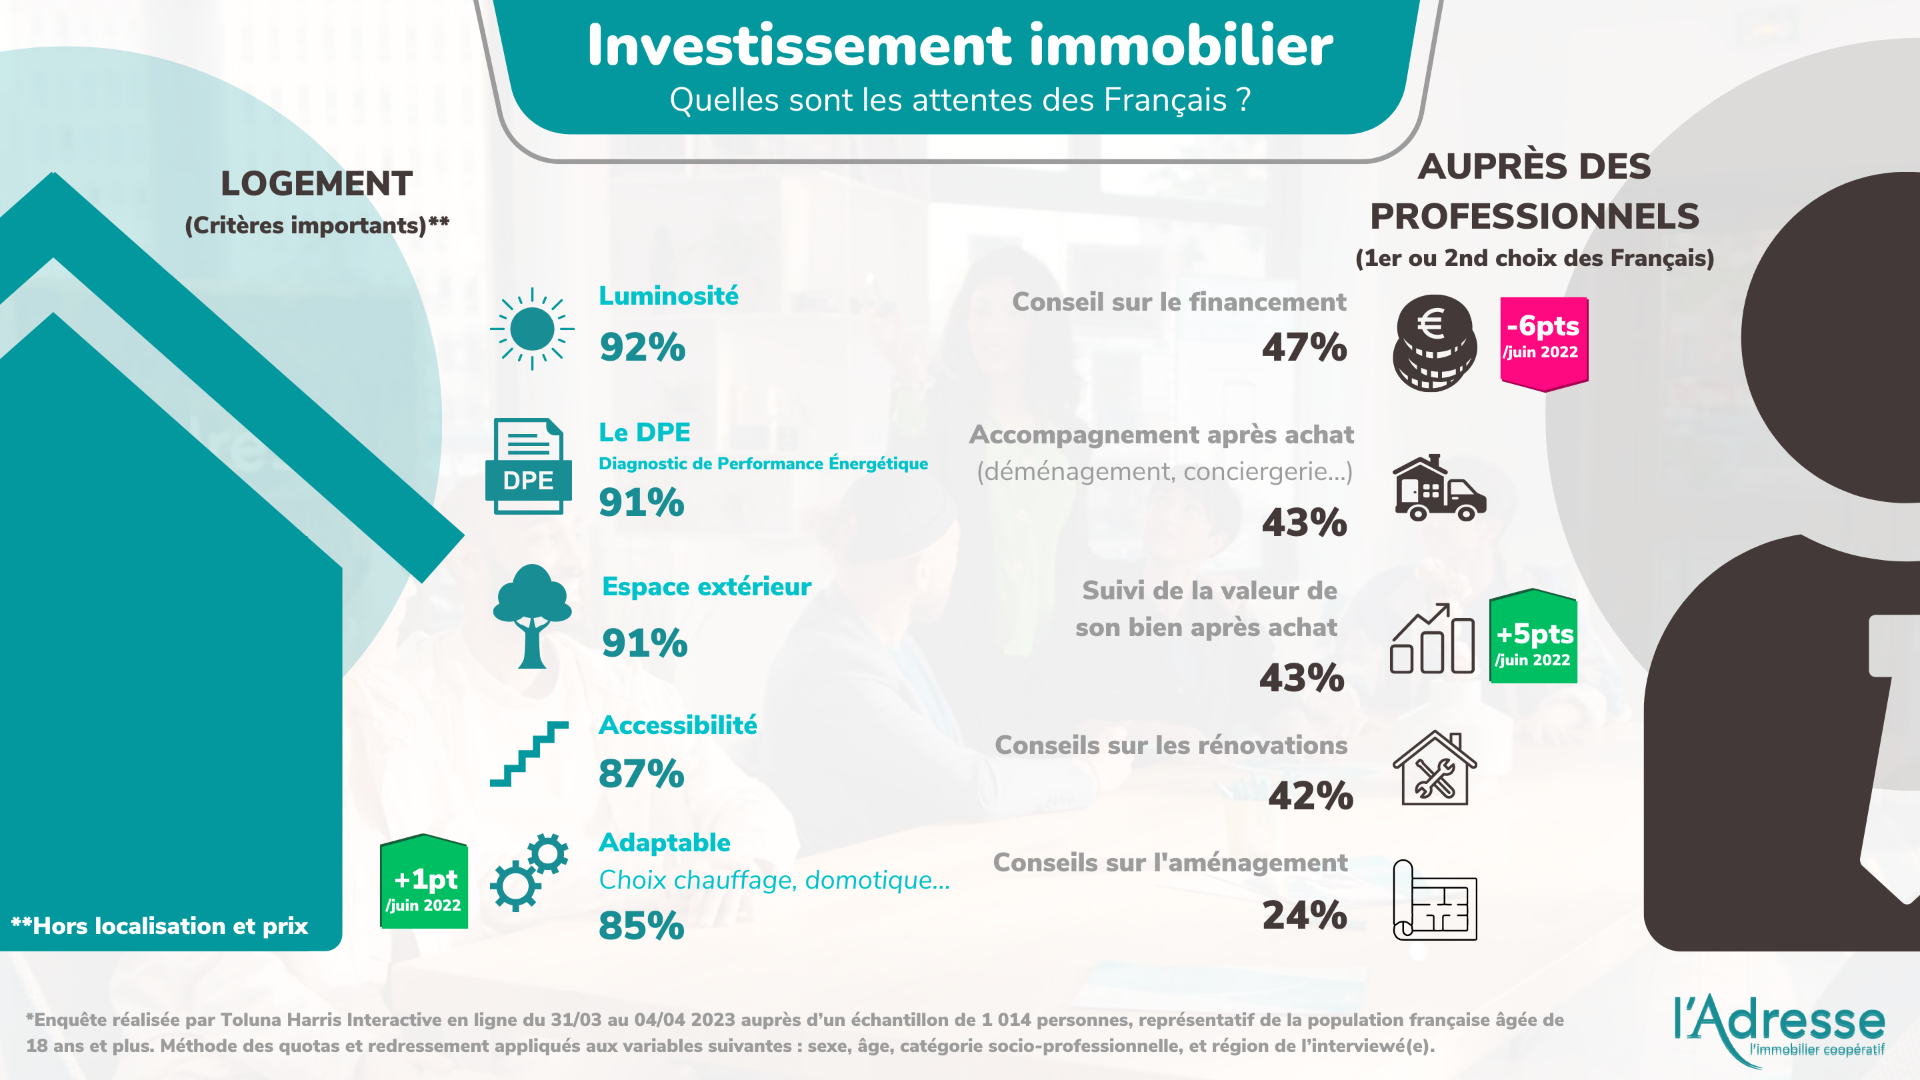 infographie sur l'exigence des Français dans leur recherche immobilière, notamment sur la performance énergétique des biens